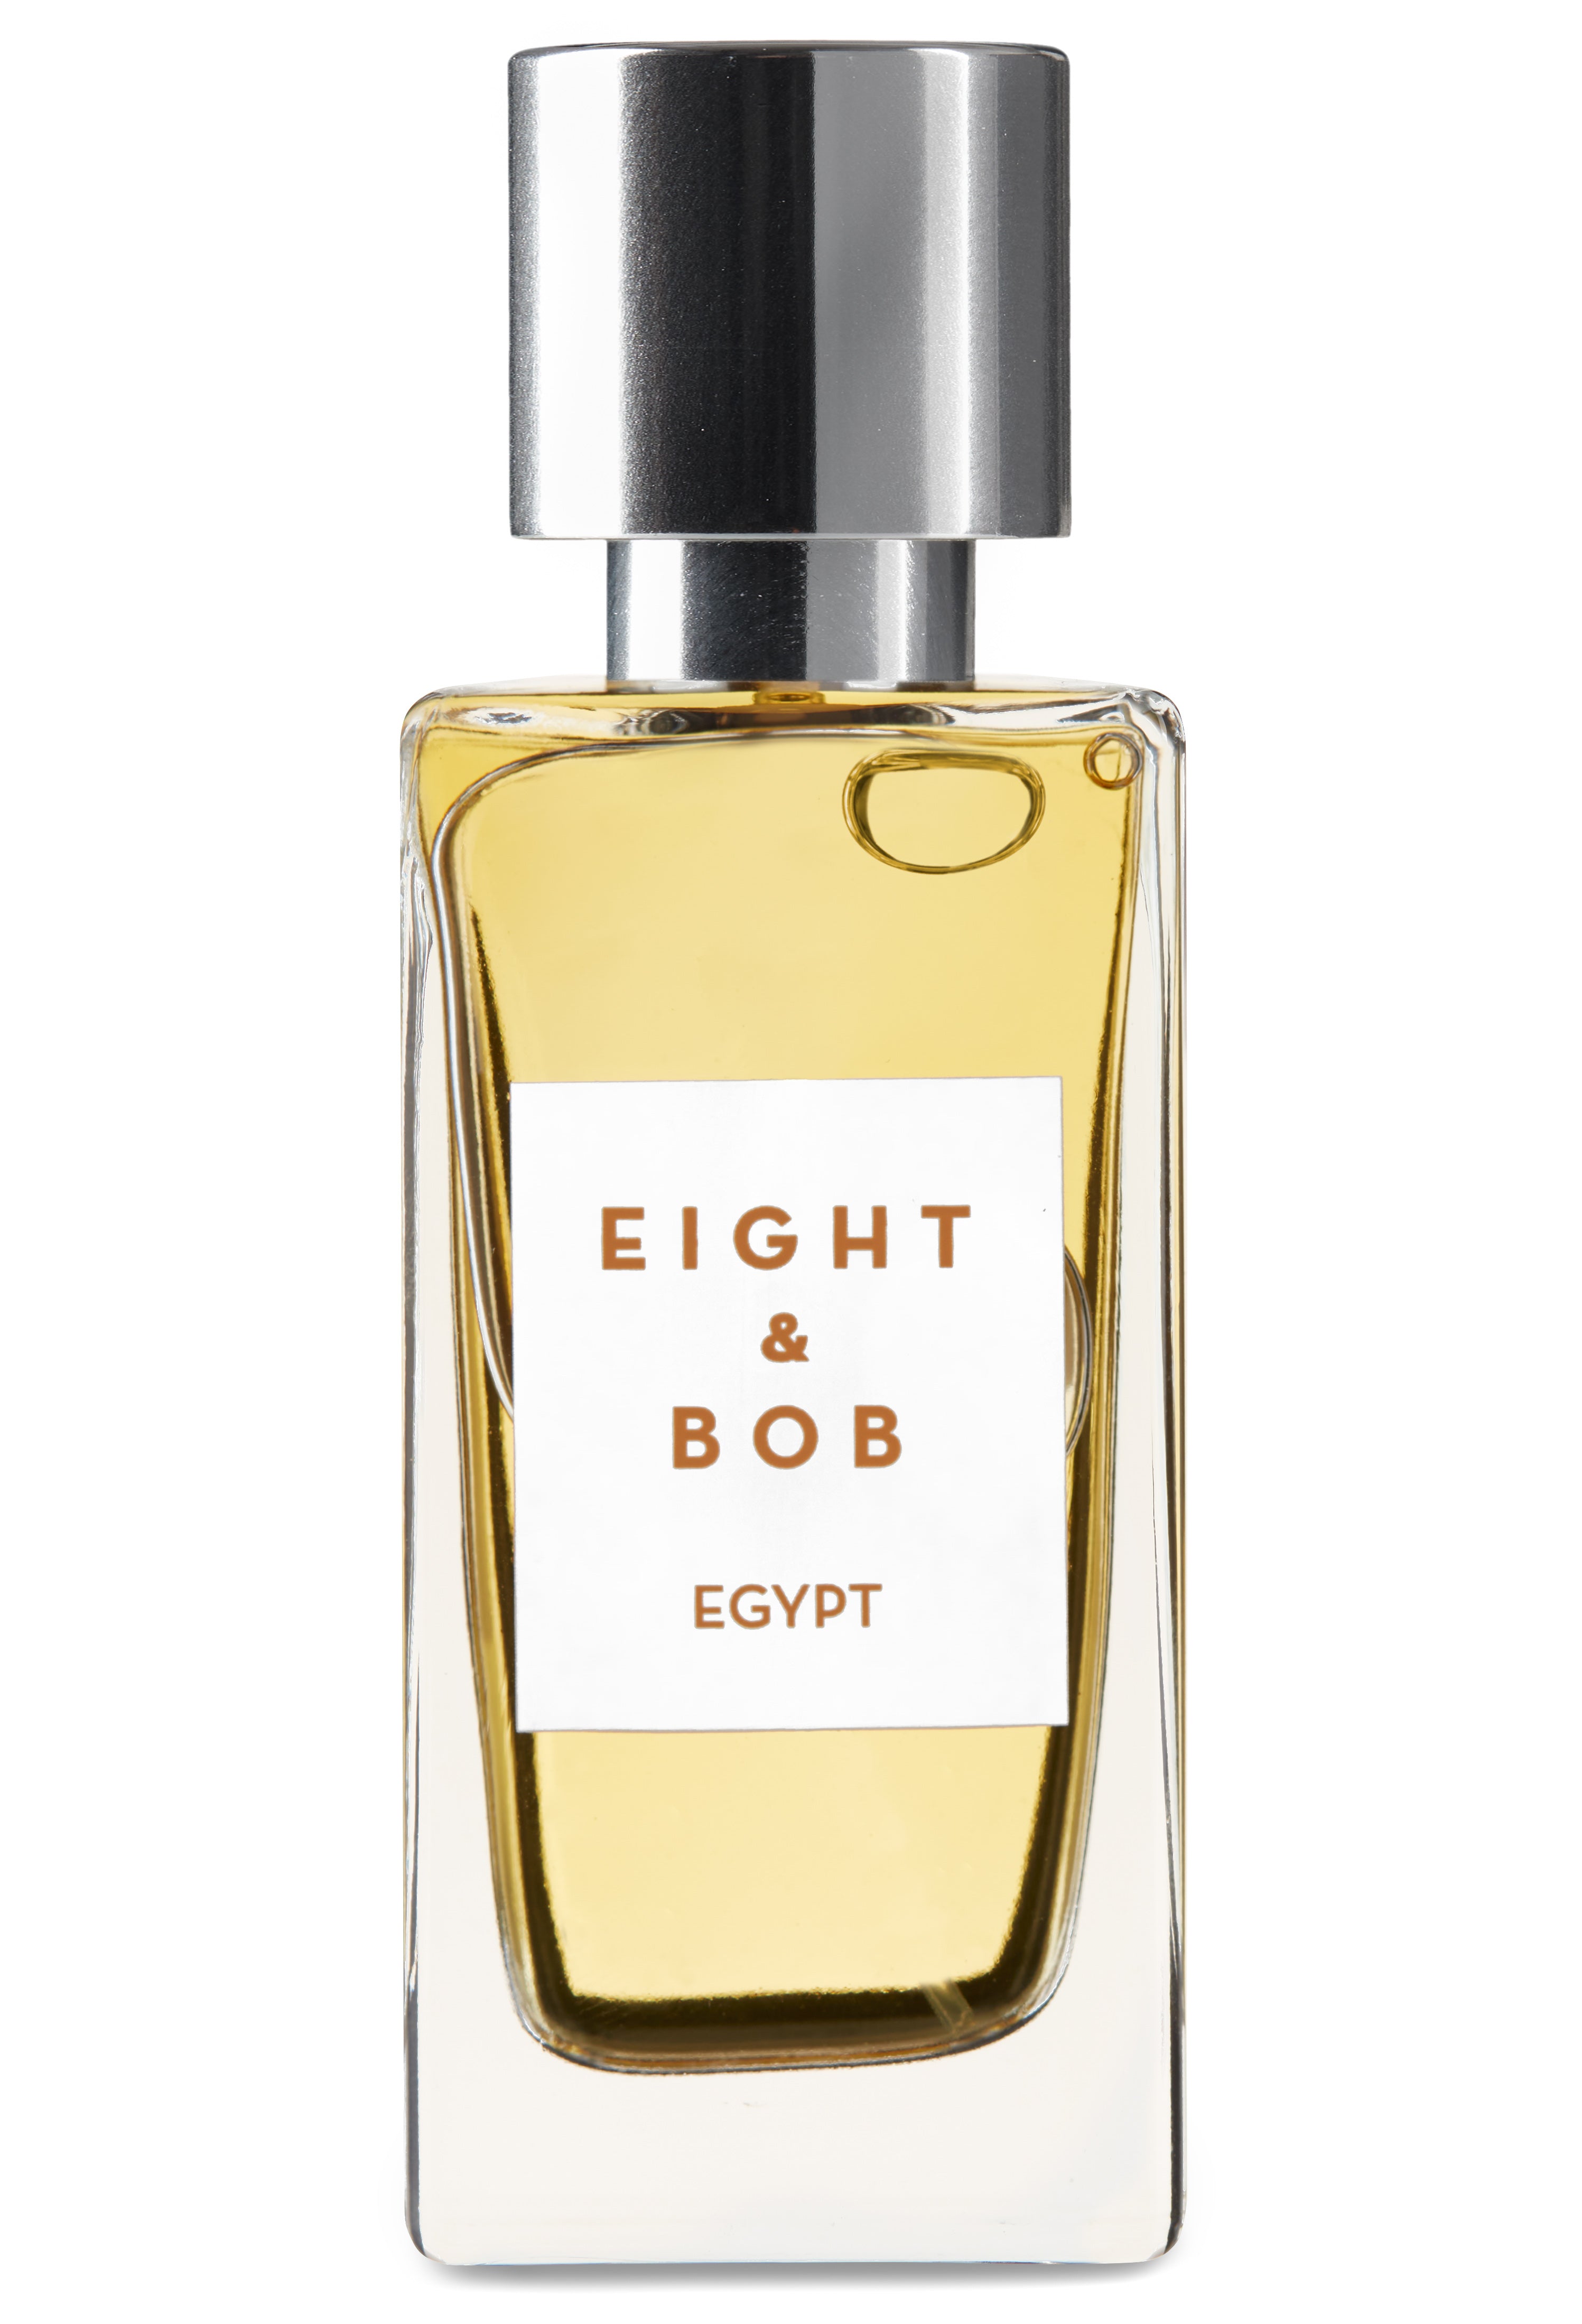 Eau de perfume egypt 30 ml